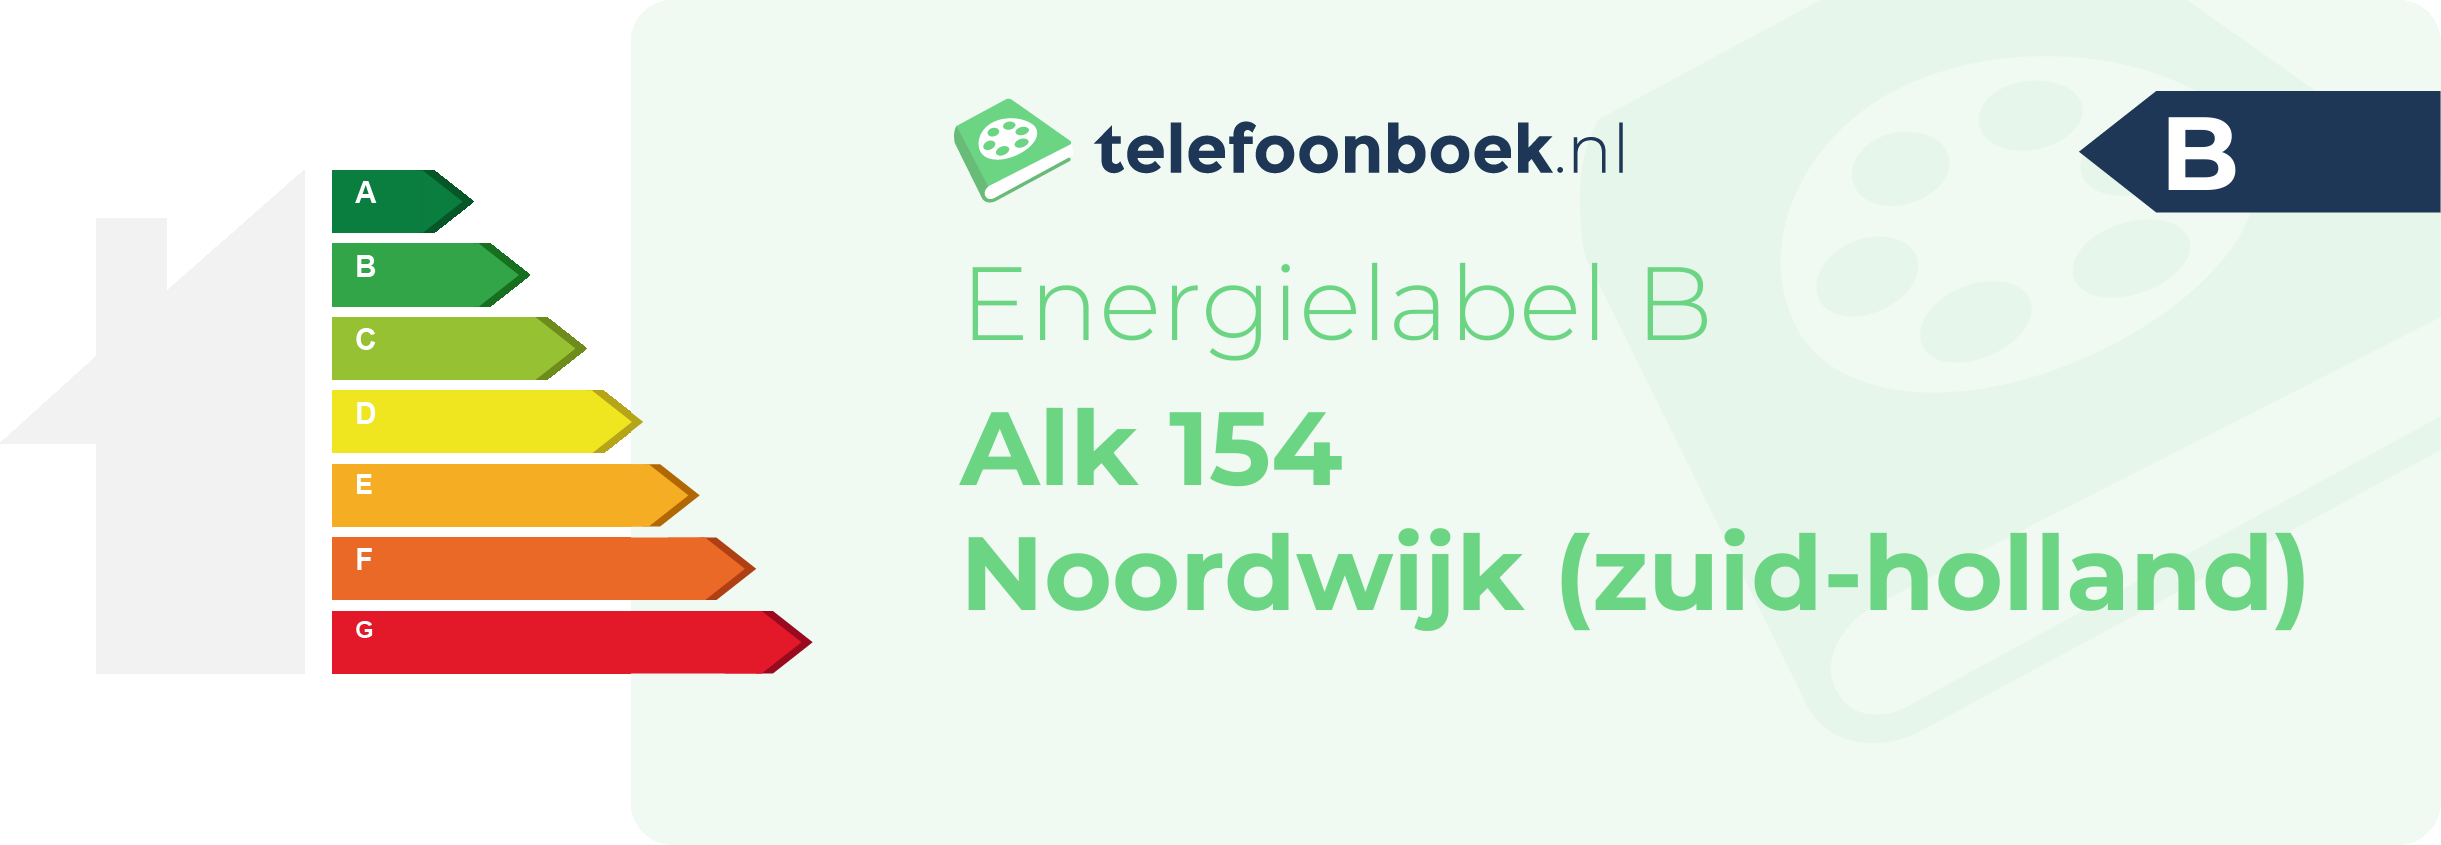 Energielabel Alk 154 Noordwijk (Zuid-Holland)